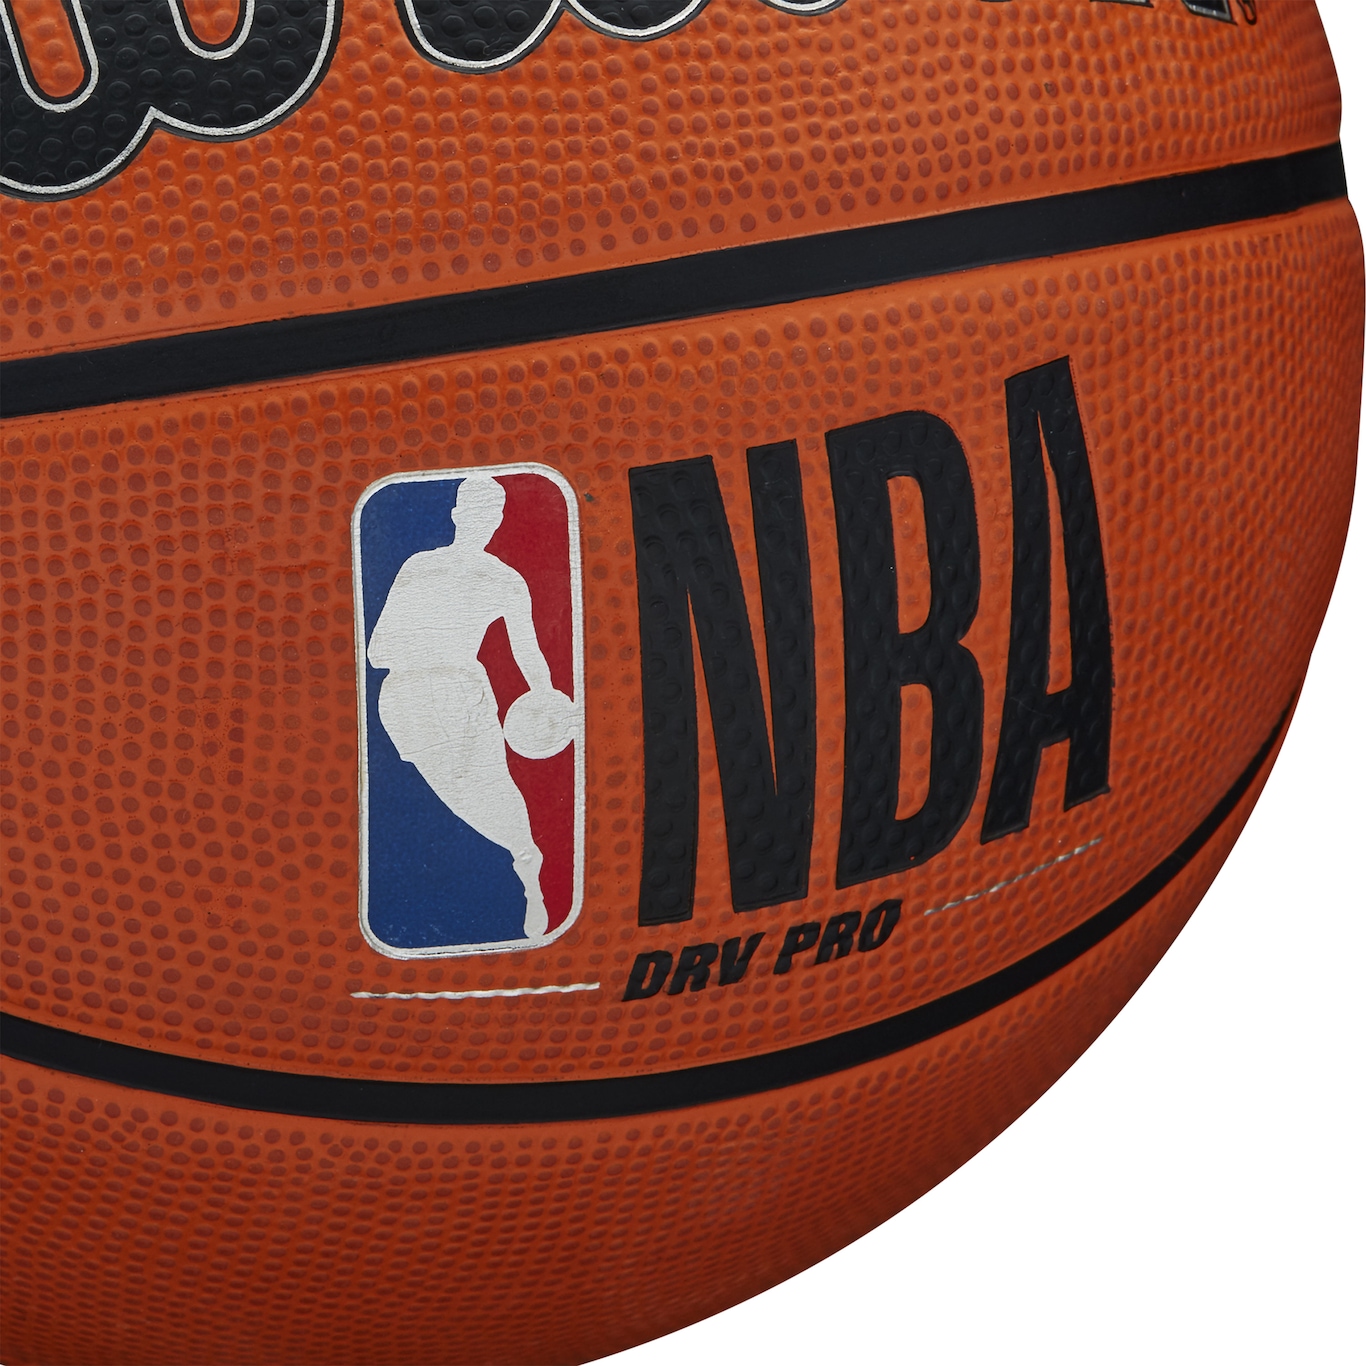 Bola de Basquete Wilson NBA Edição Dourada, Movento